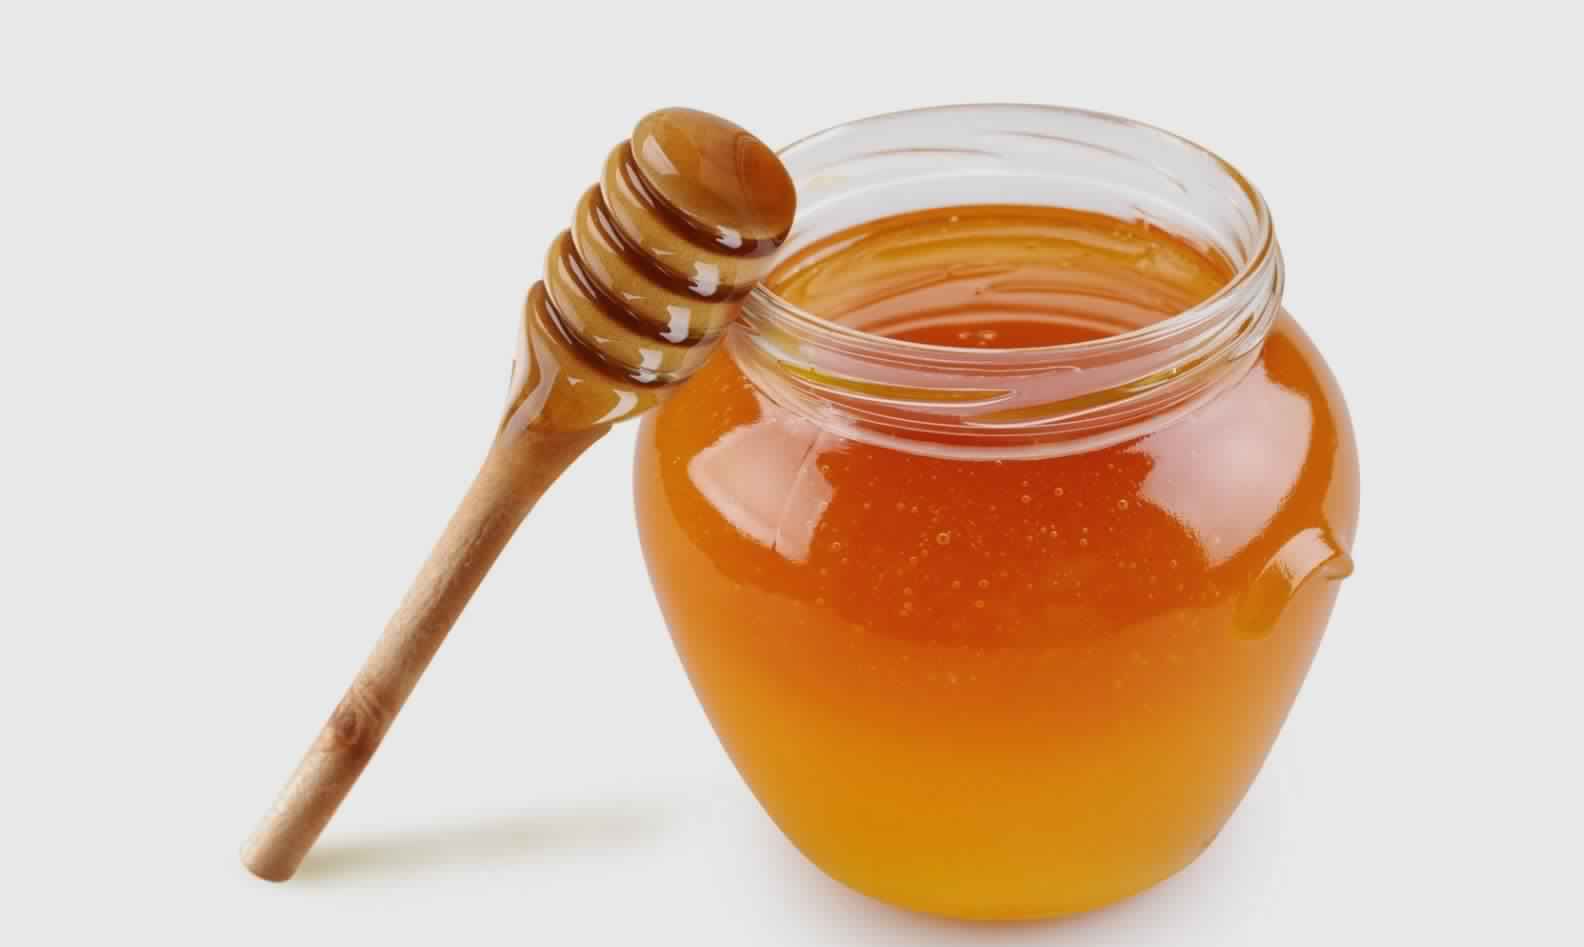  11 فائدة من أهم عن فوائد العسل الصحية والجمالية